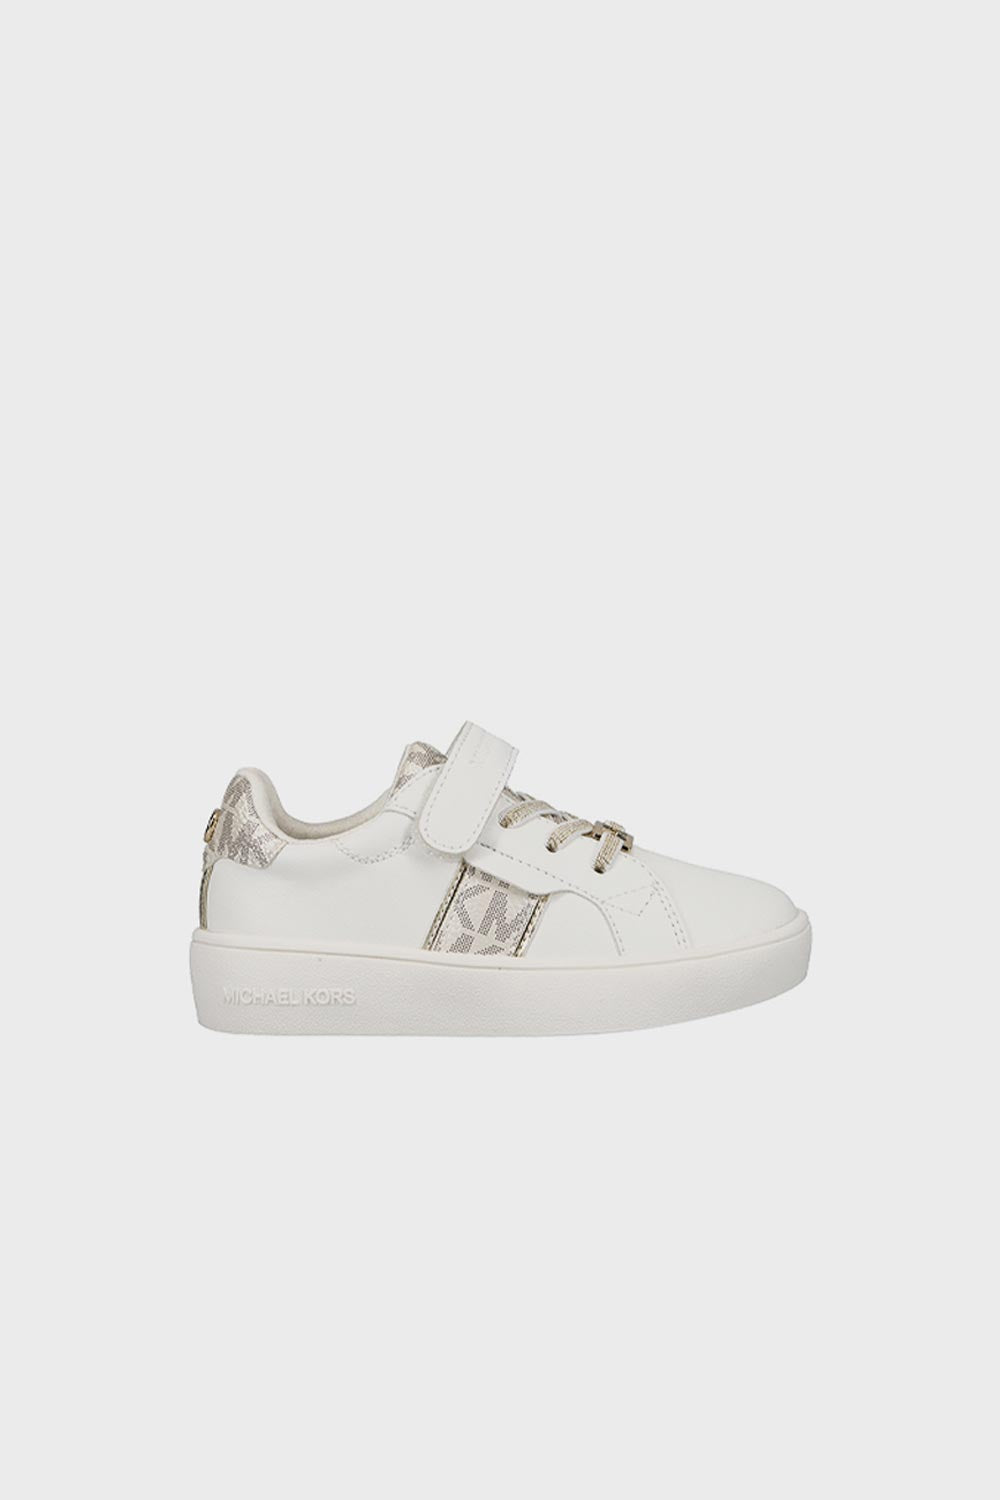 מייקל קורס נעלי סניקרס Jem Maxine בצבע לבן לתינוקות-Michael Kors-21-נאקו